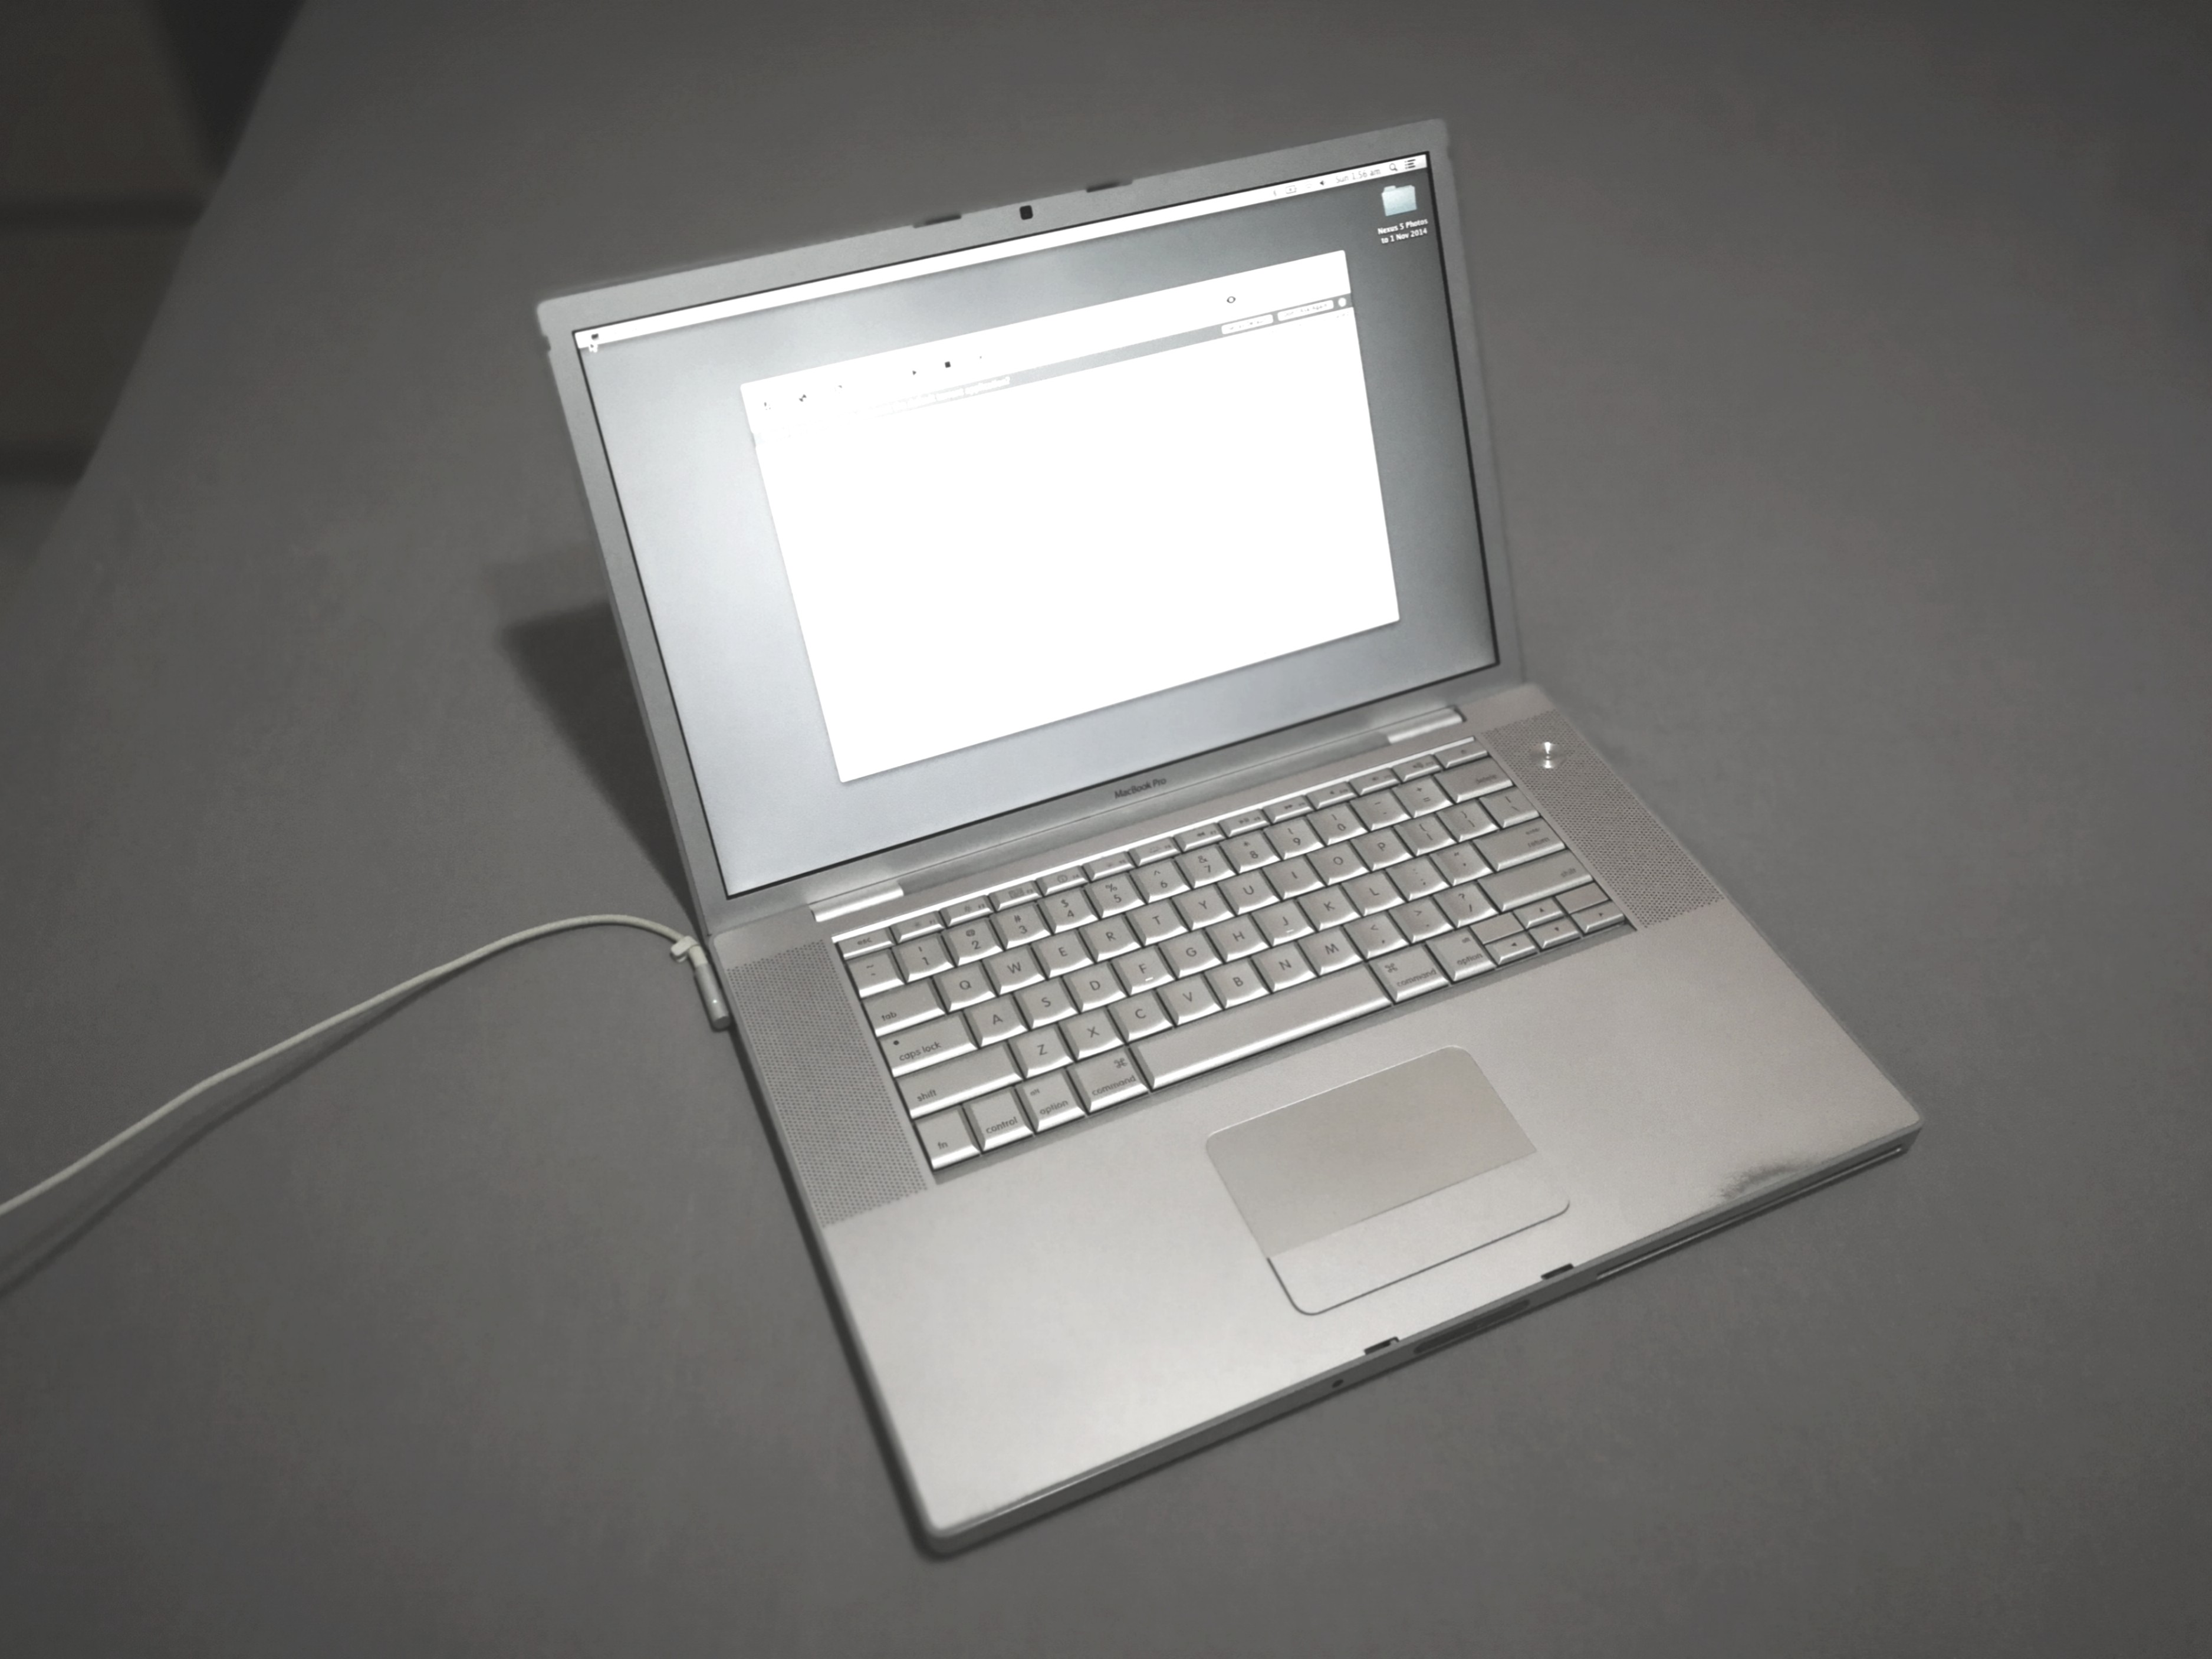 Macbook pro 2007 upgrade